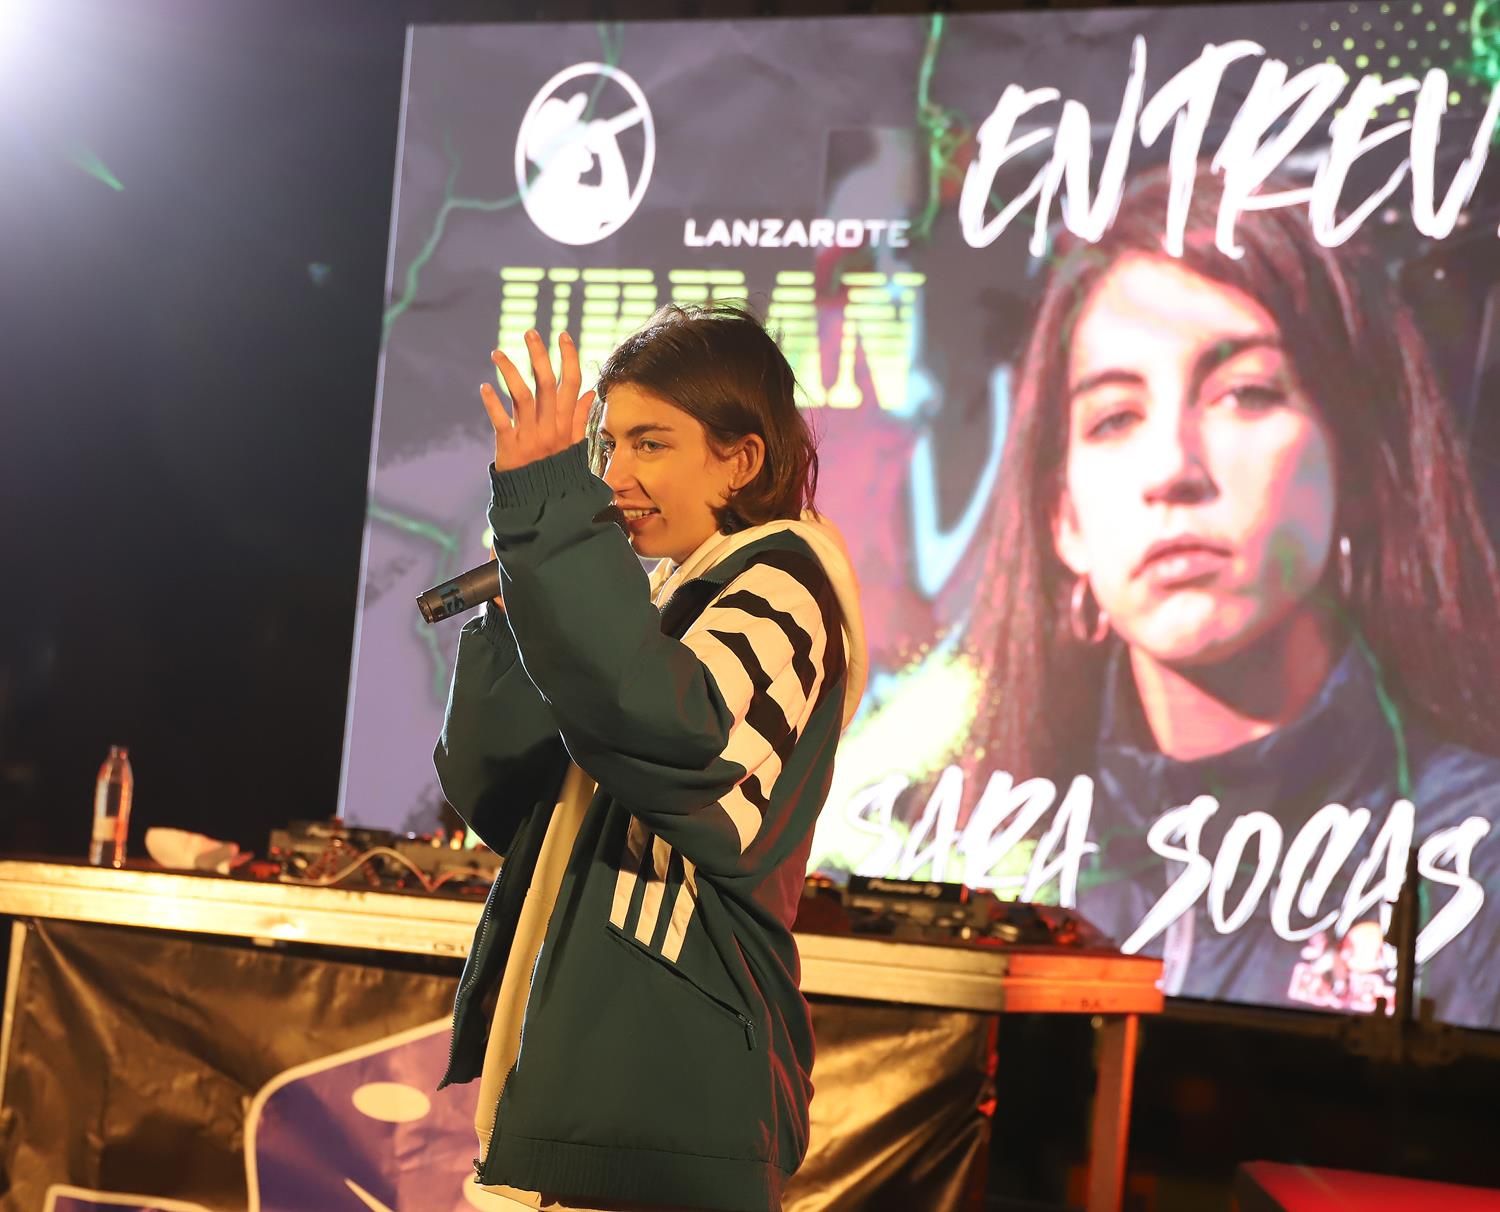 Lanzarote Urban Fest con la rapera canaria Sara Socas